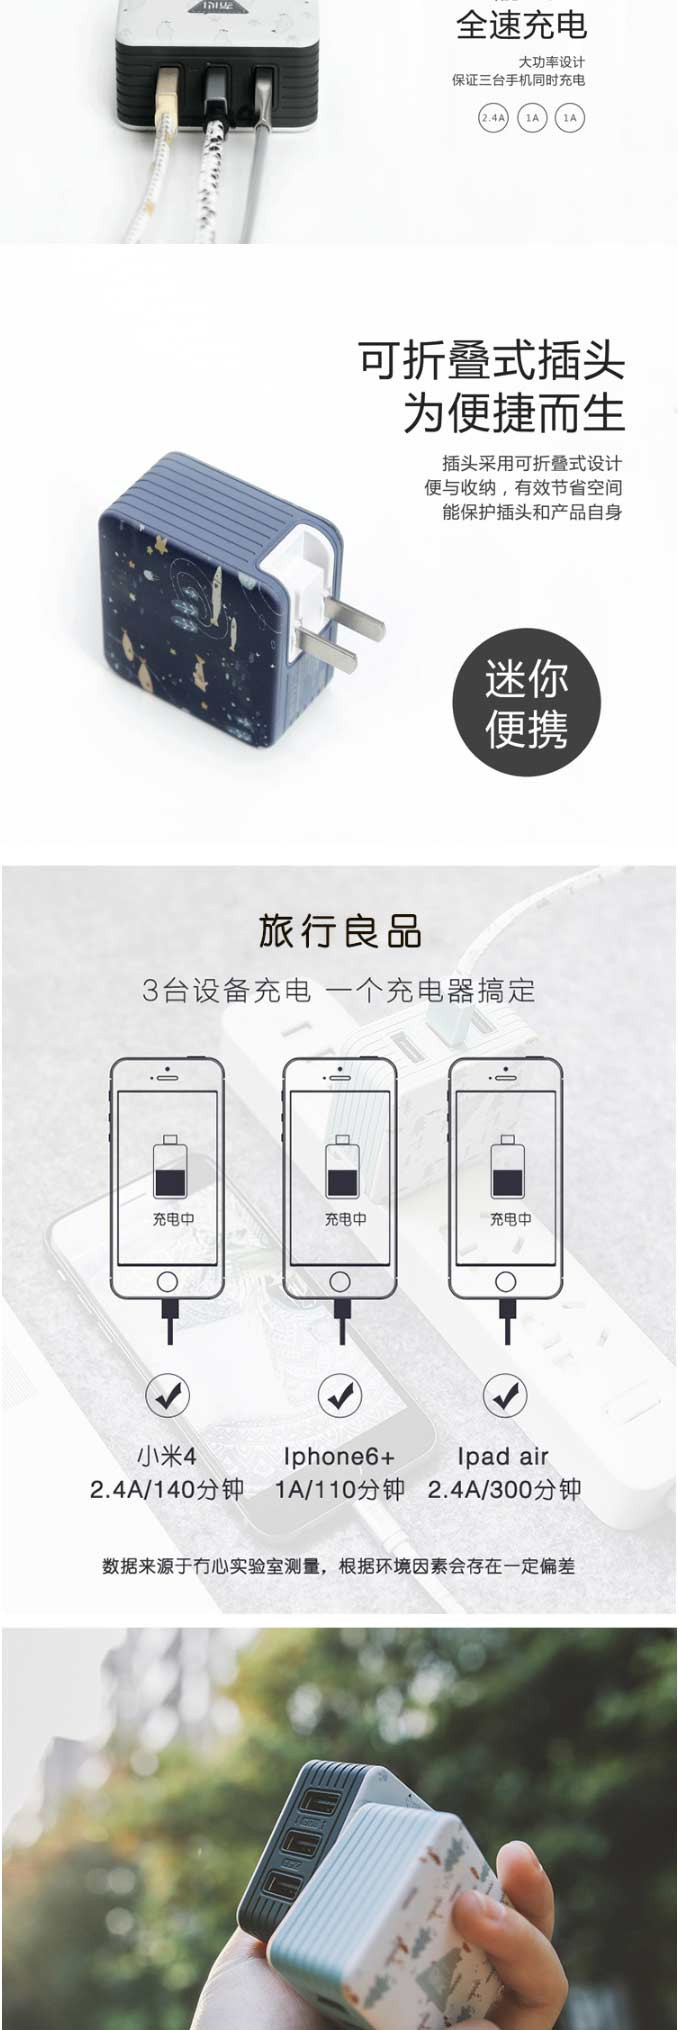 冇心 3U物语手机充电头3个USB输出口